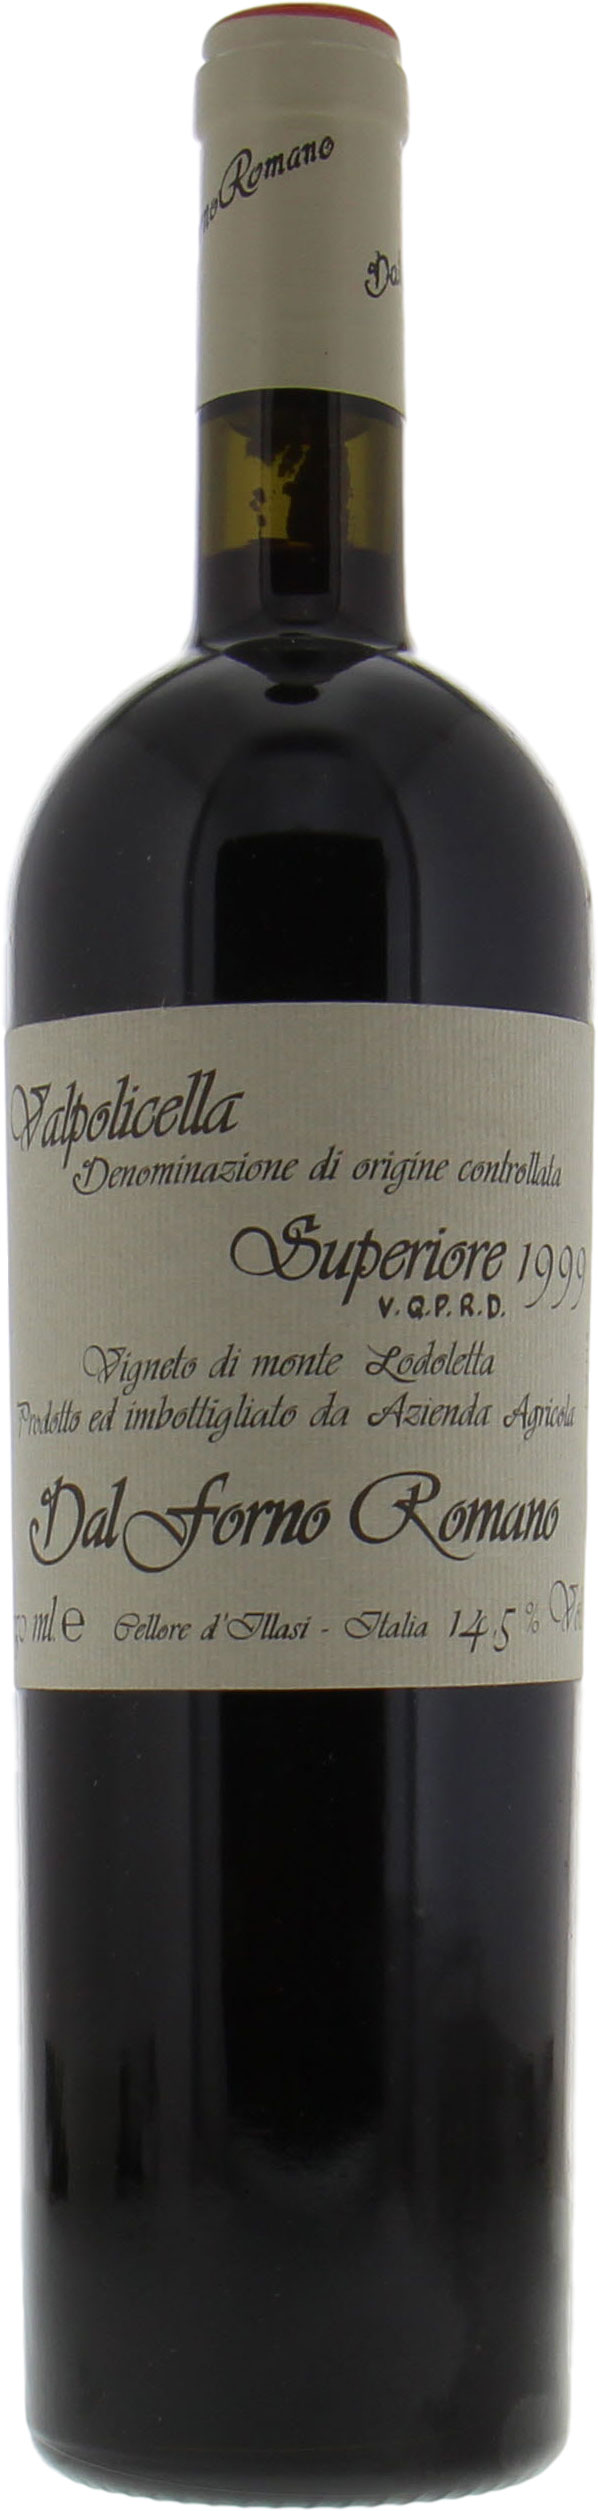 Dal Forno - Romano Valpolicella 1999 Perfect